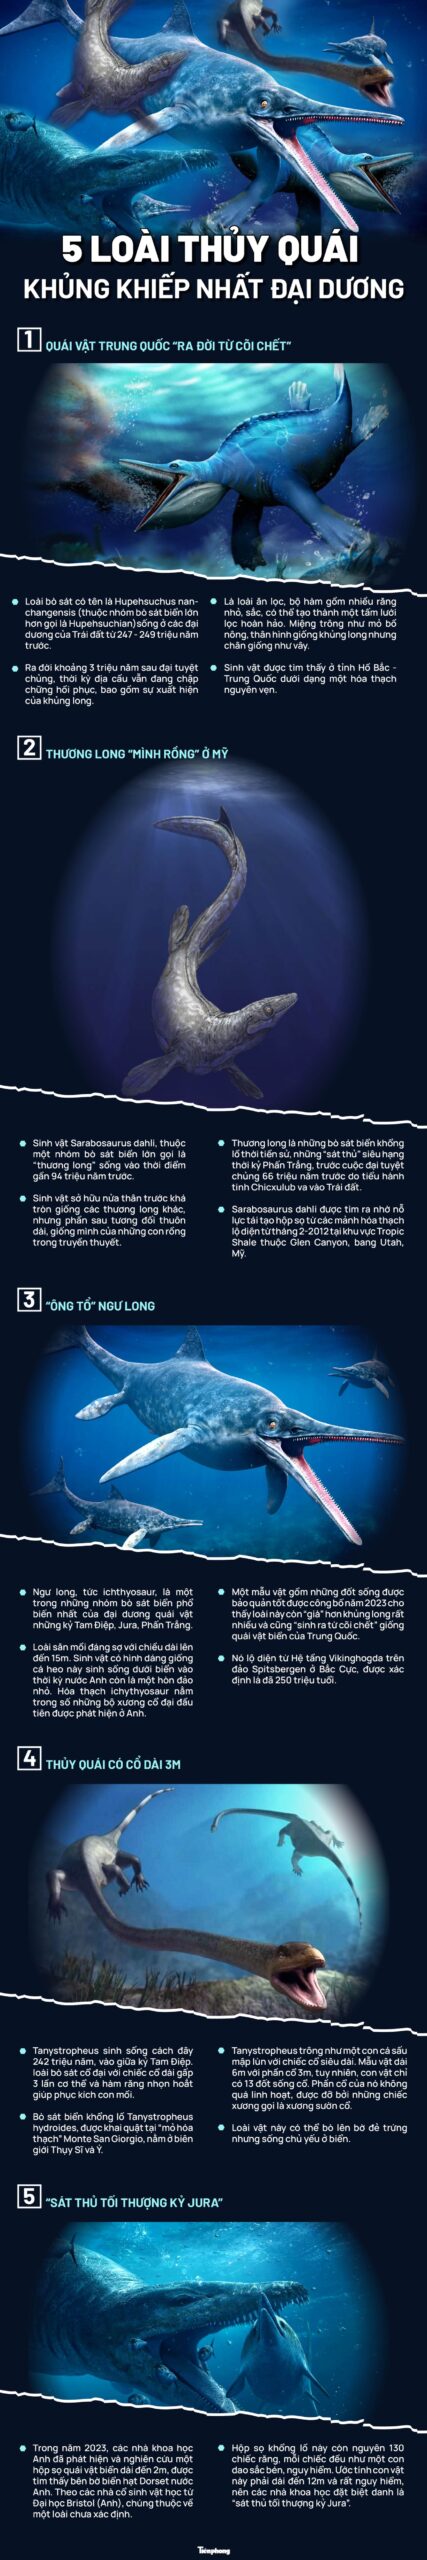 Lộ diện 5 loài quái vật khủng khiếp nhất đại dương- Ảnh 1.